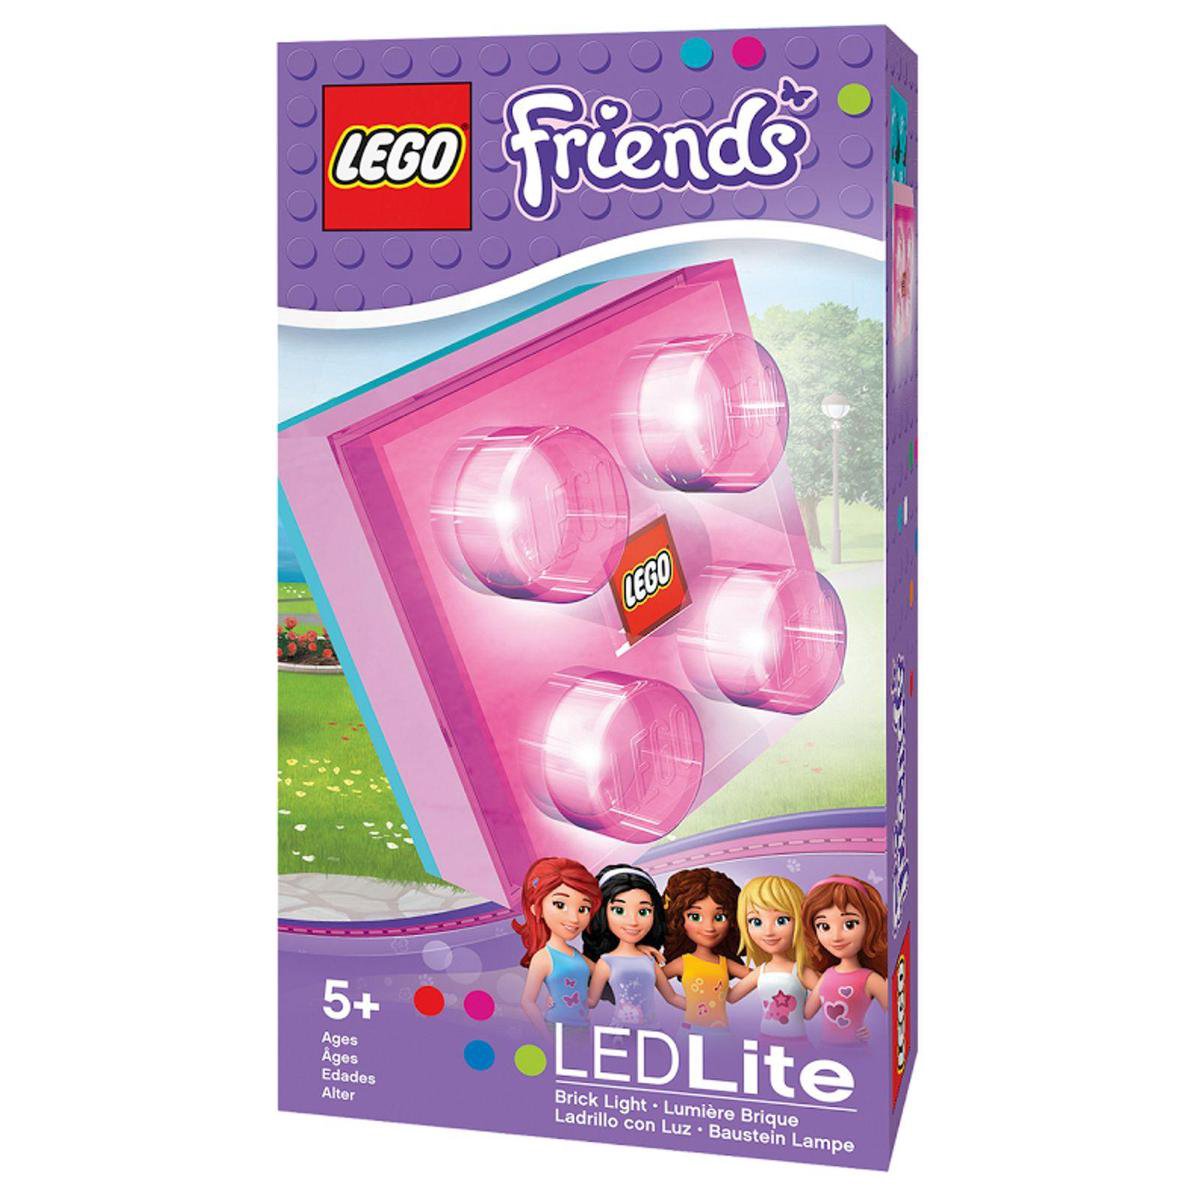 Lego Friends Brick light avec piles | bol.com